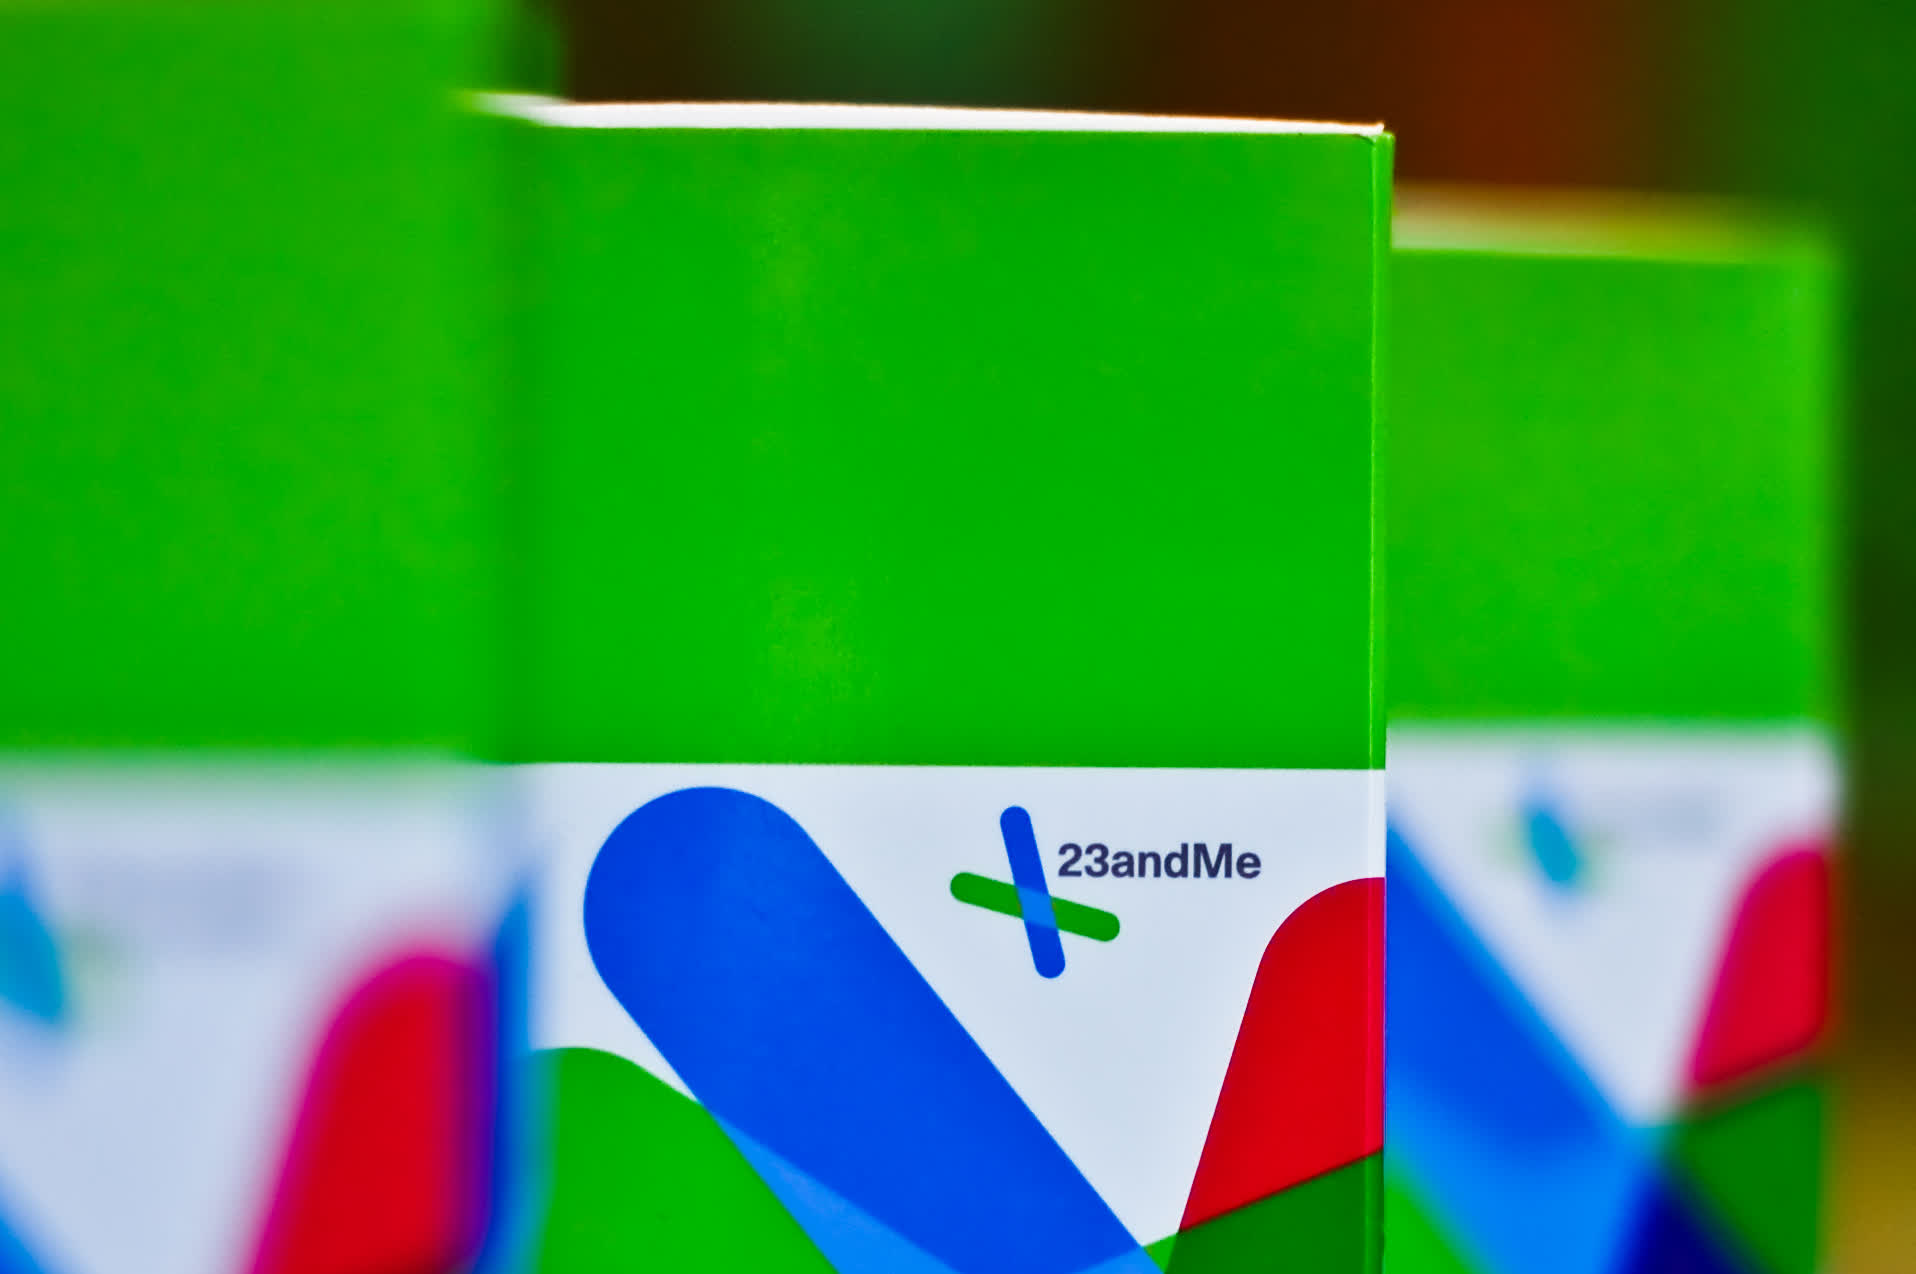 23andMe confirma que la violación masiva de datos del año pasado pasó desapercibida durante cinco meses, los piratas informáticos robaron datos de genotipo sin procesar